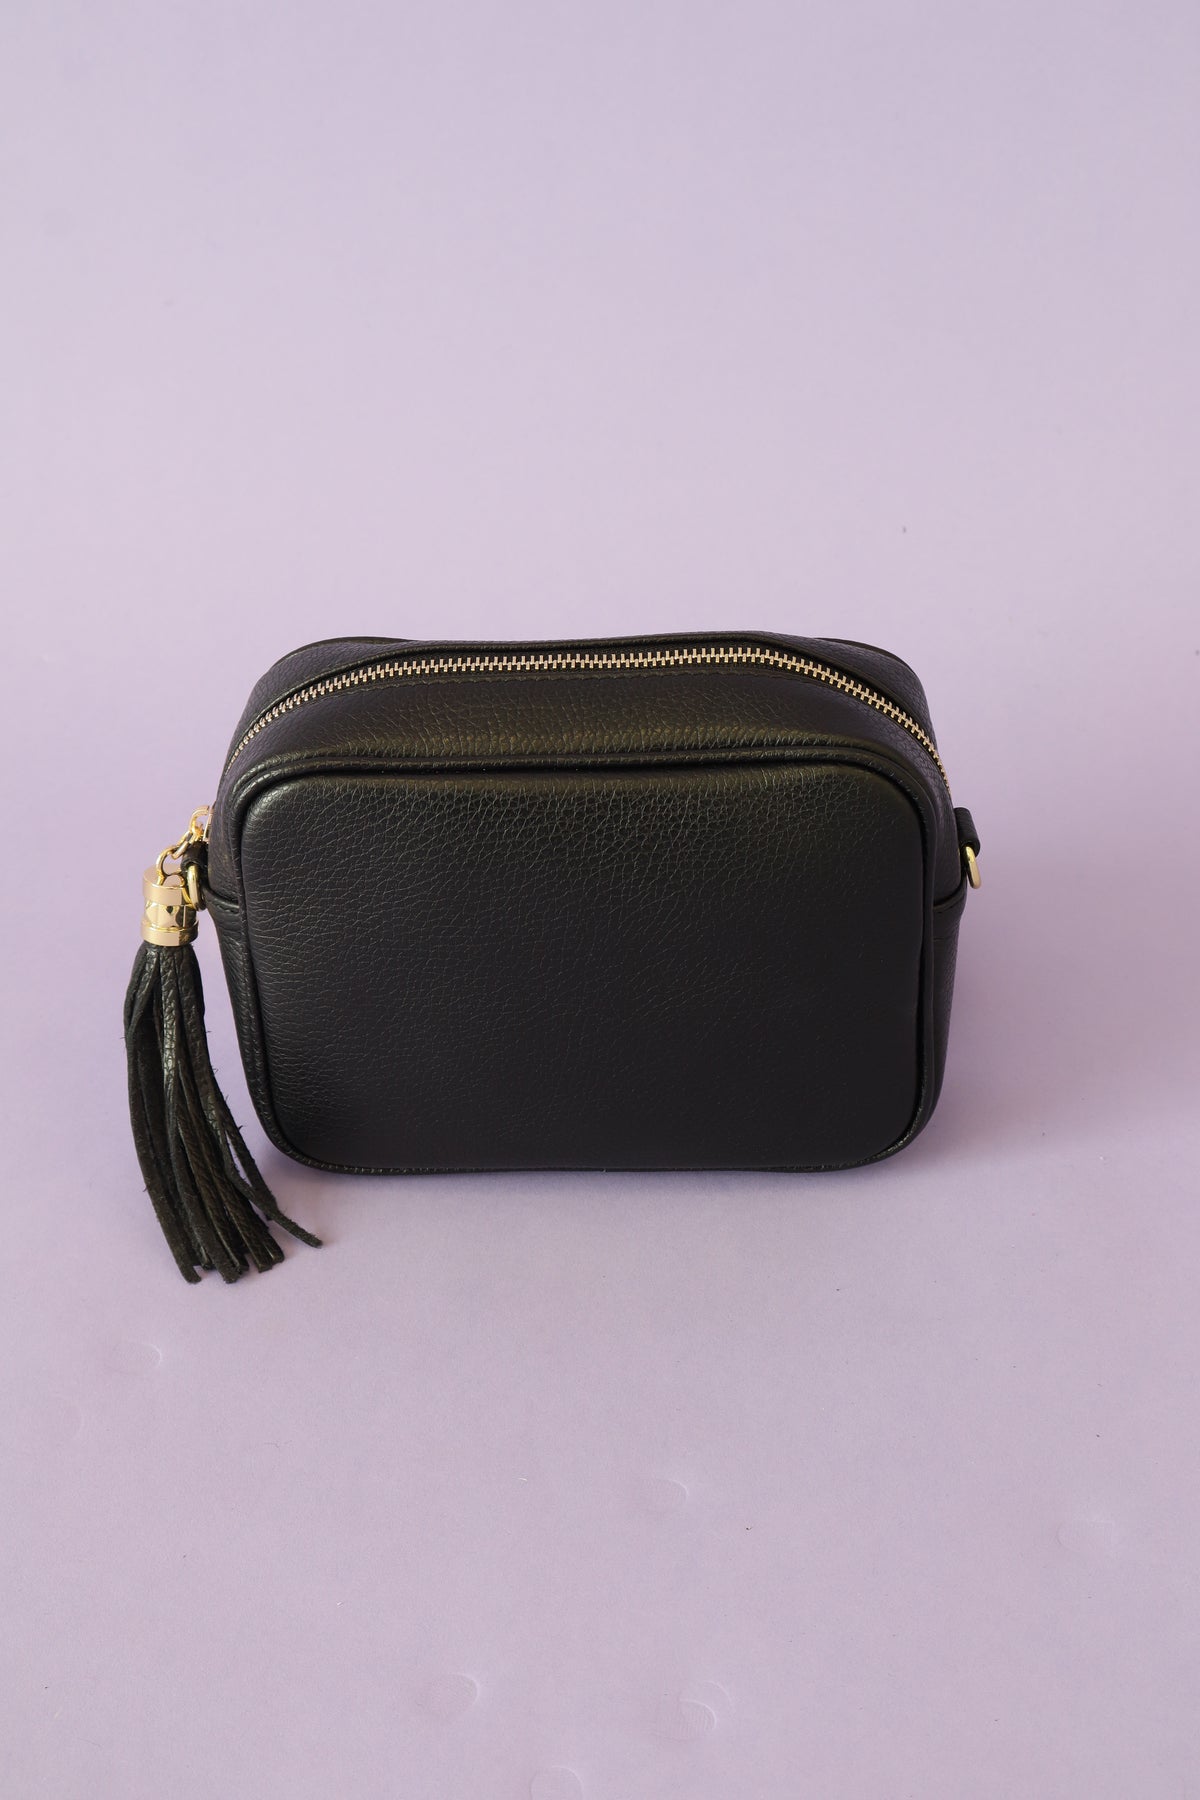 Remi Handbag in Black